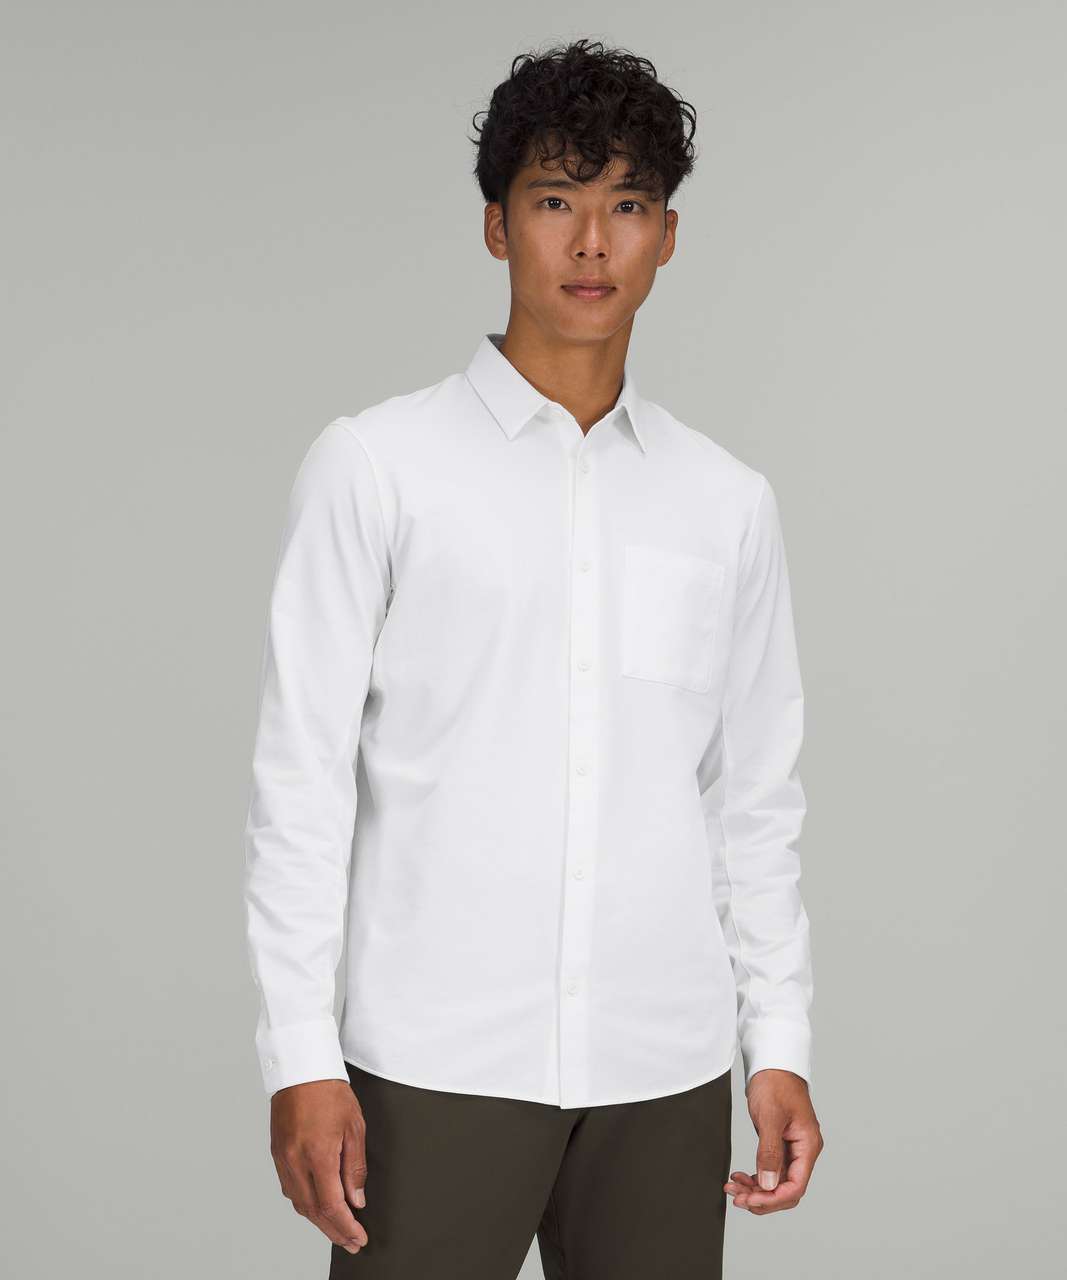 Lululemon Commission Long Sleeve Shirt - White